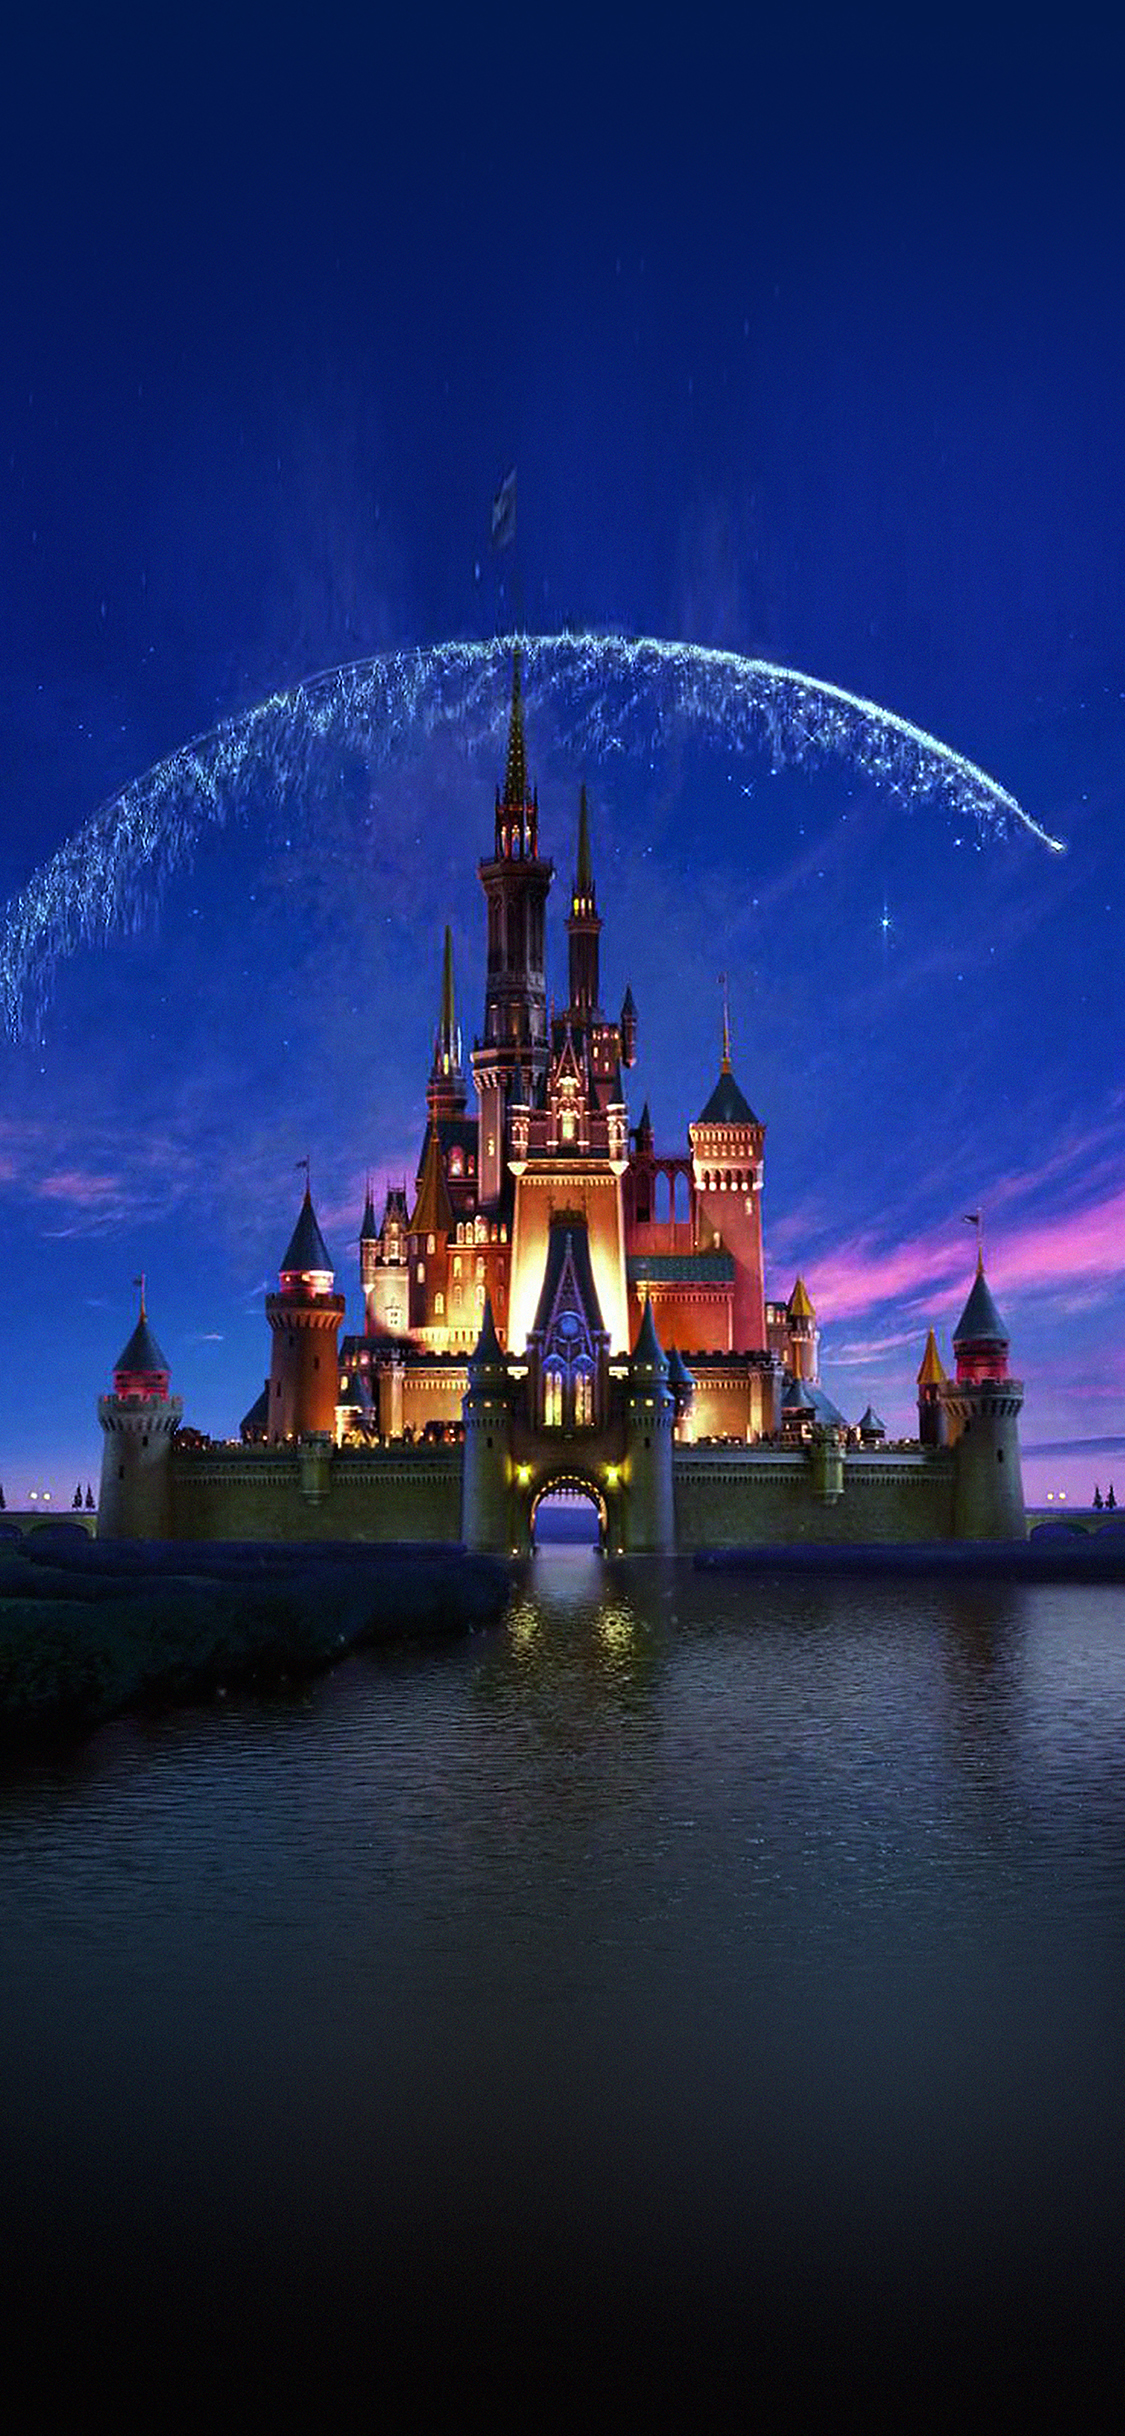 Wallpaper Disney Castle Artwork Illust Sky